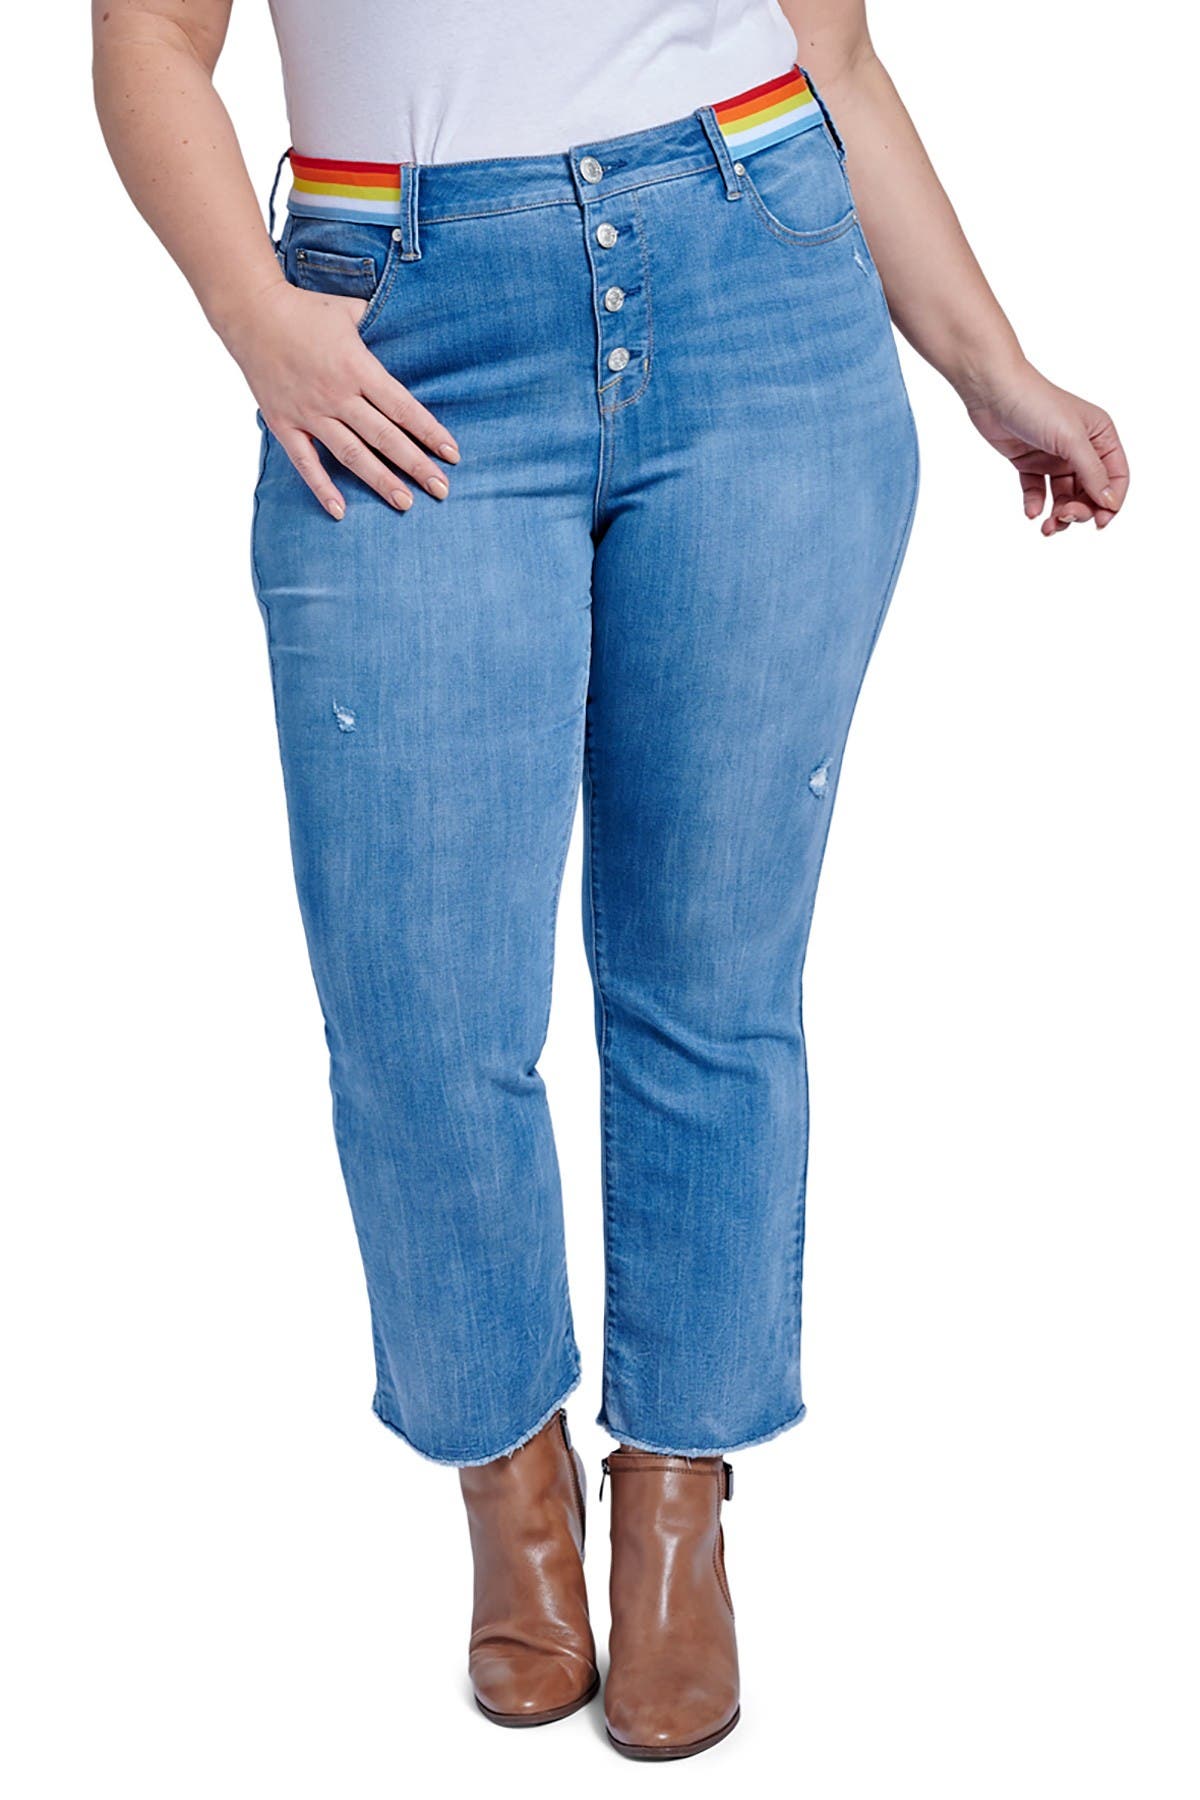 nordstrom seven jeans